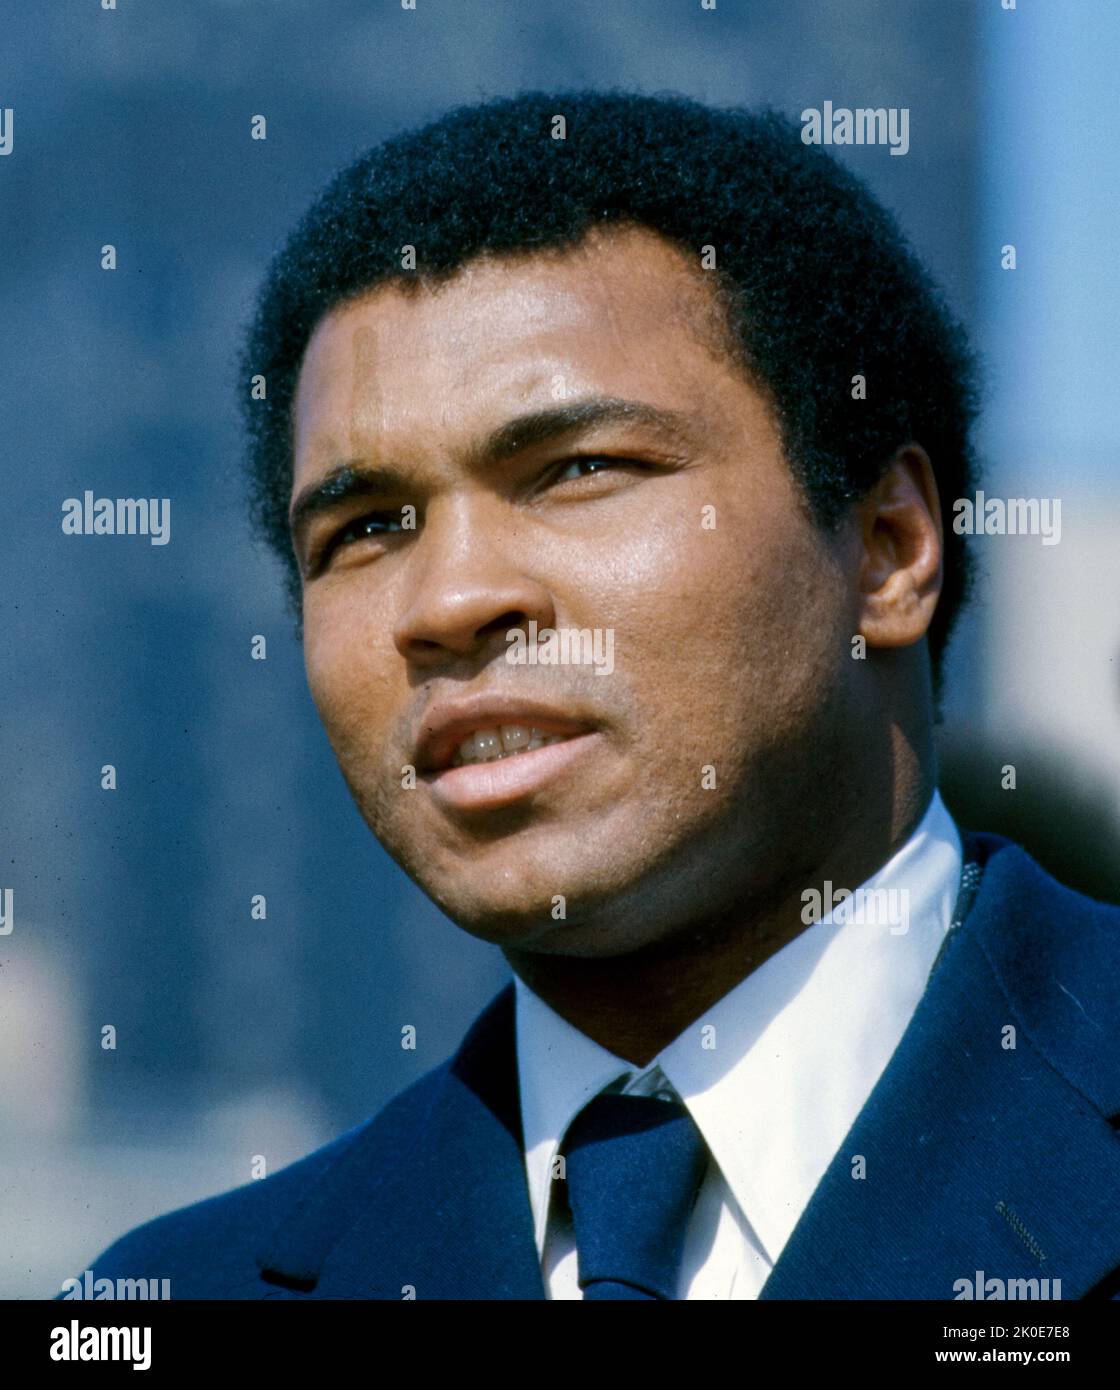 Muhammad Ali (Cassius Marcellus Clay), 1942 - 2016. Amerikanischer Boxer, Aktivist, Entertainer, Dichter und Philanthropin. Er wird als der Größte bezeichnet und gilt weithin als einer der bedeutendsten und gefeierten Persönlichkeiten des 20.. Jahrhunderts. Stockfoto